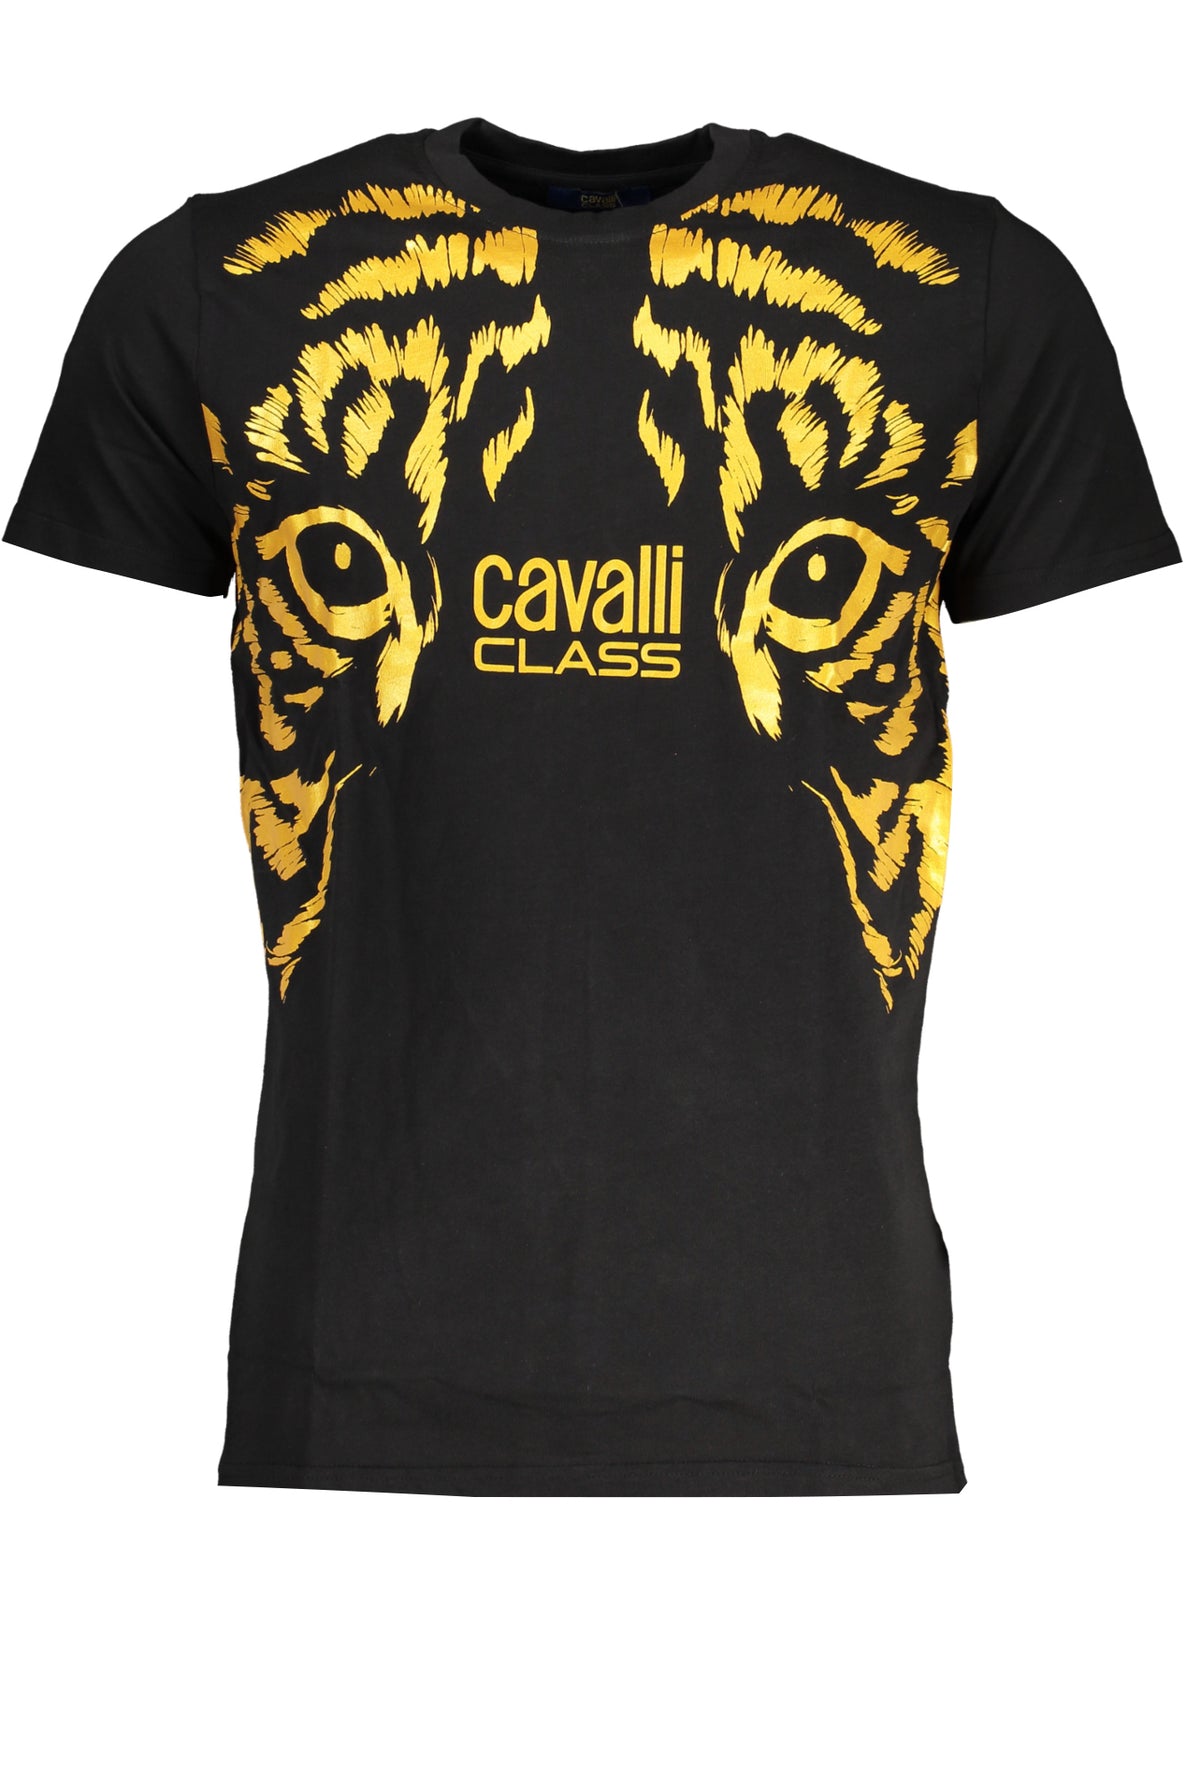 CAVALLI CLASS